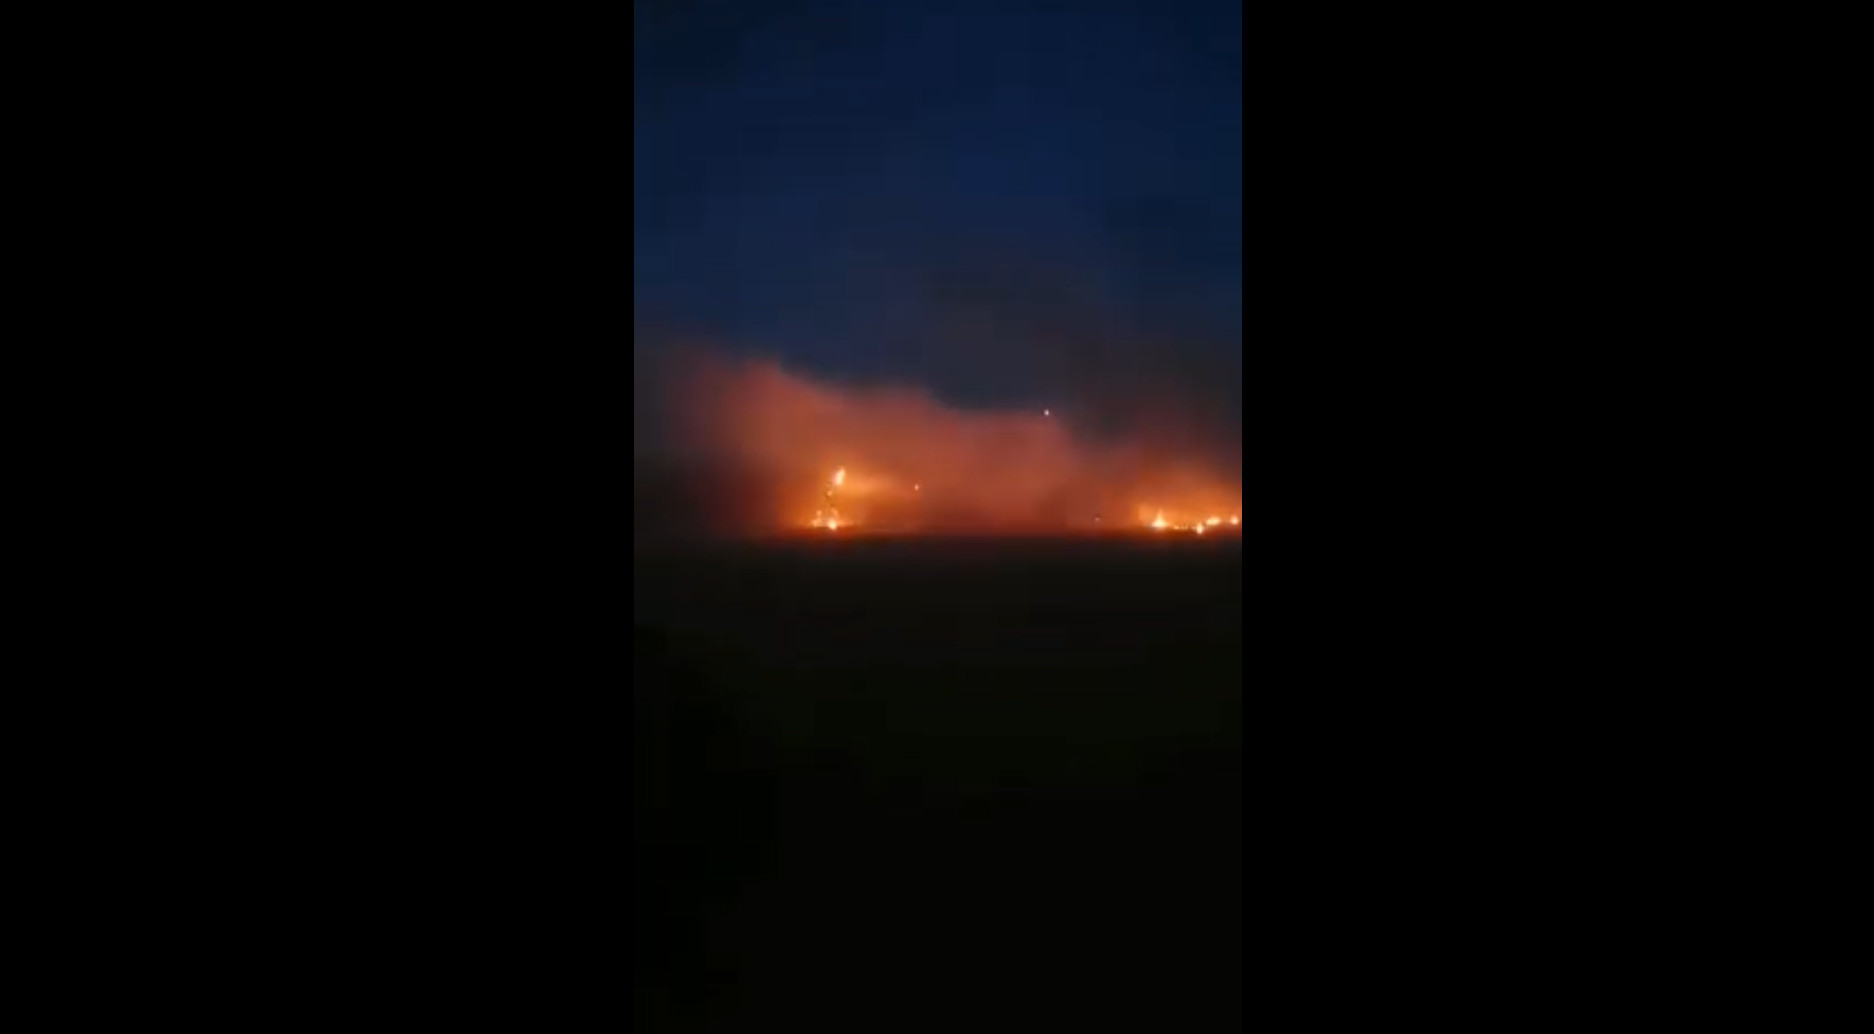 Έβρος τώρα: Μετανάστες πετάνε μολότοφ και ανάβουν φωτιές – Νέα βίντεο